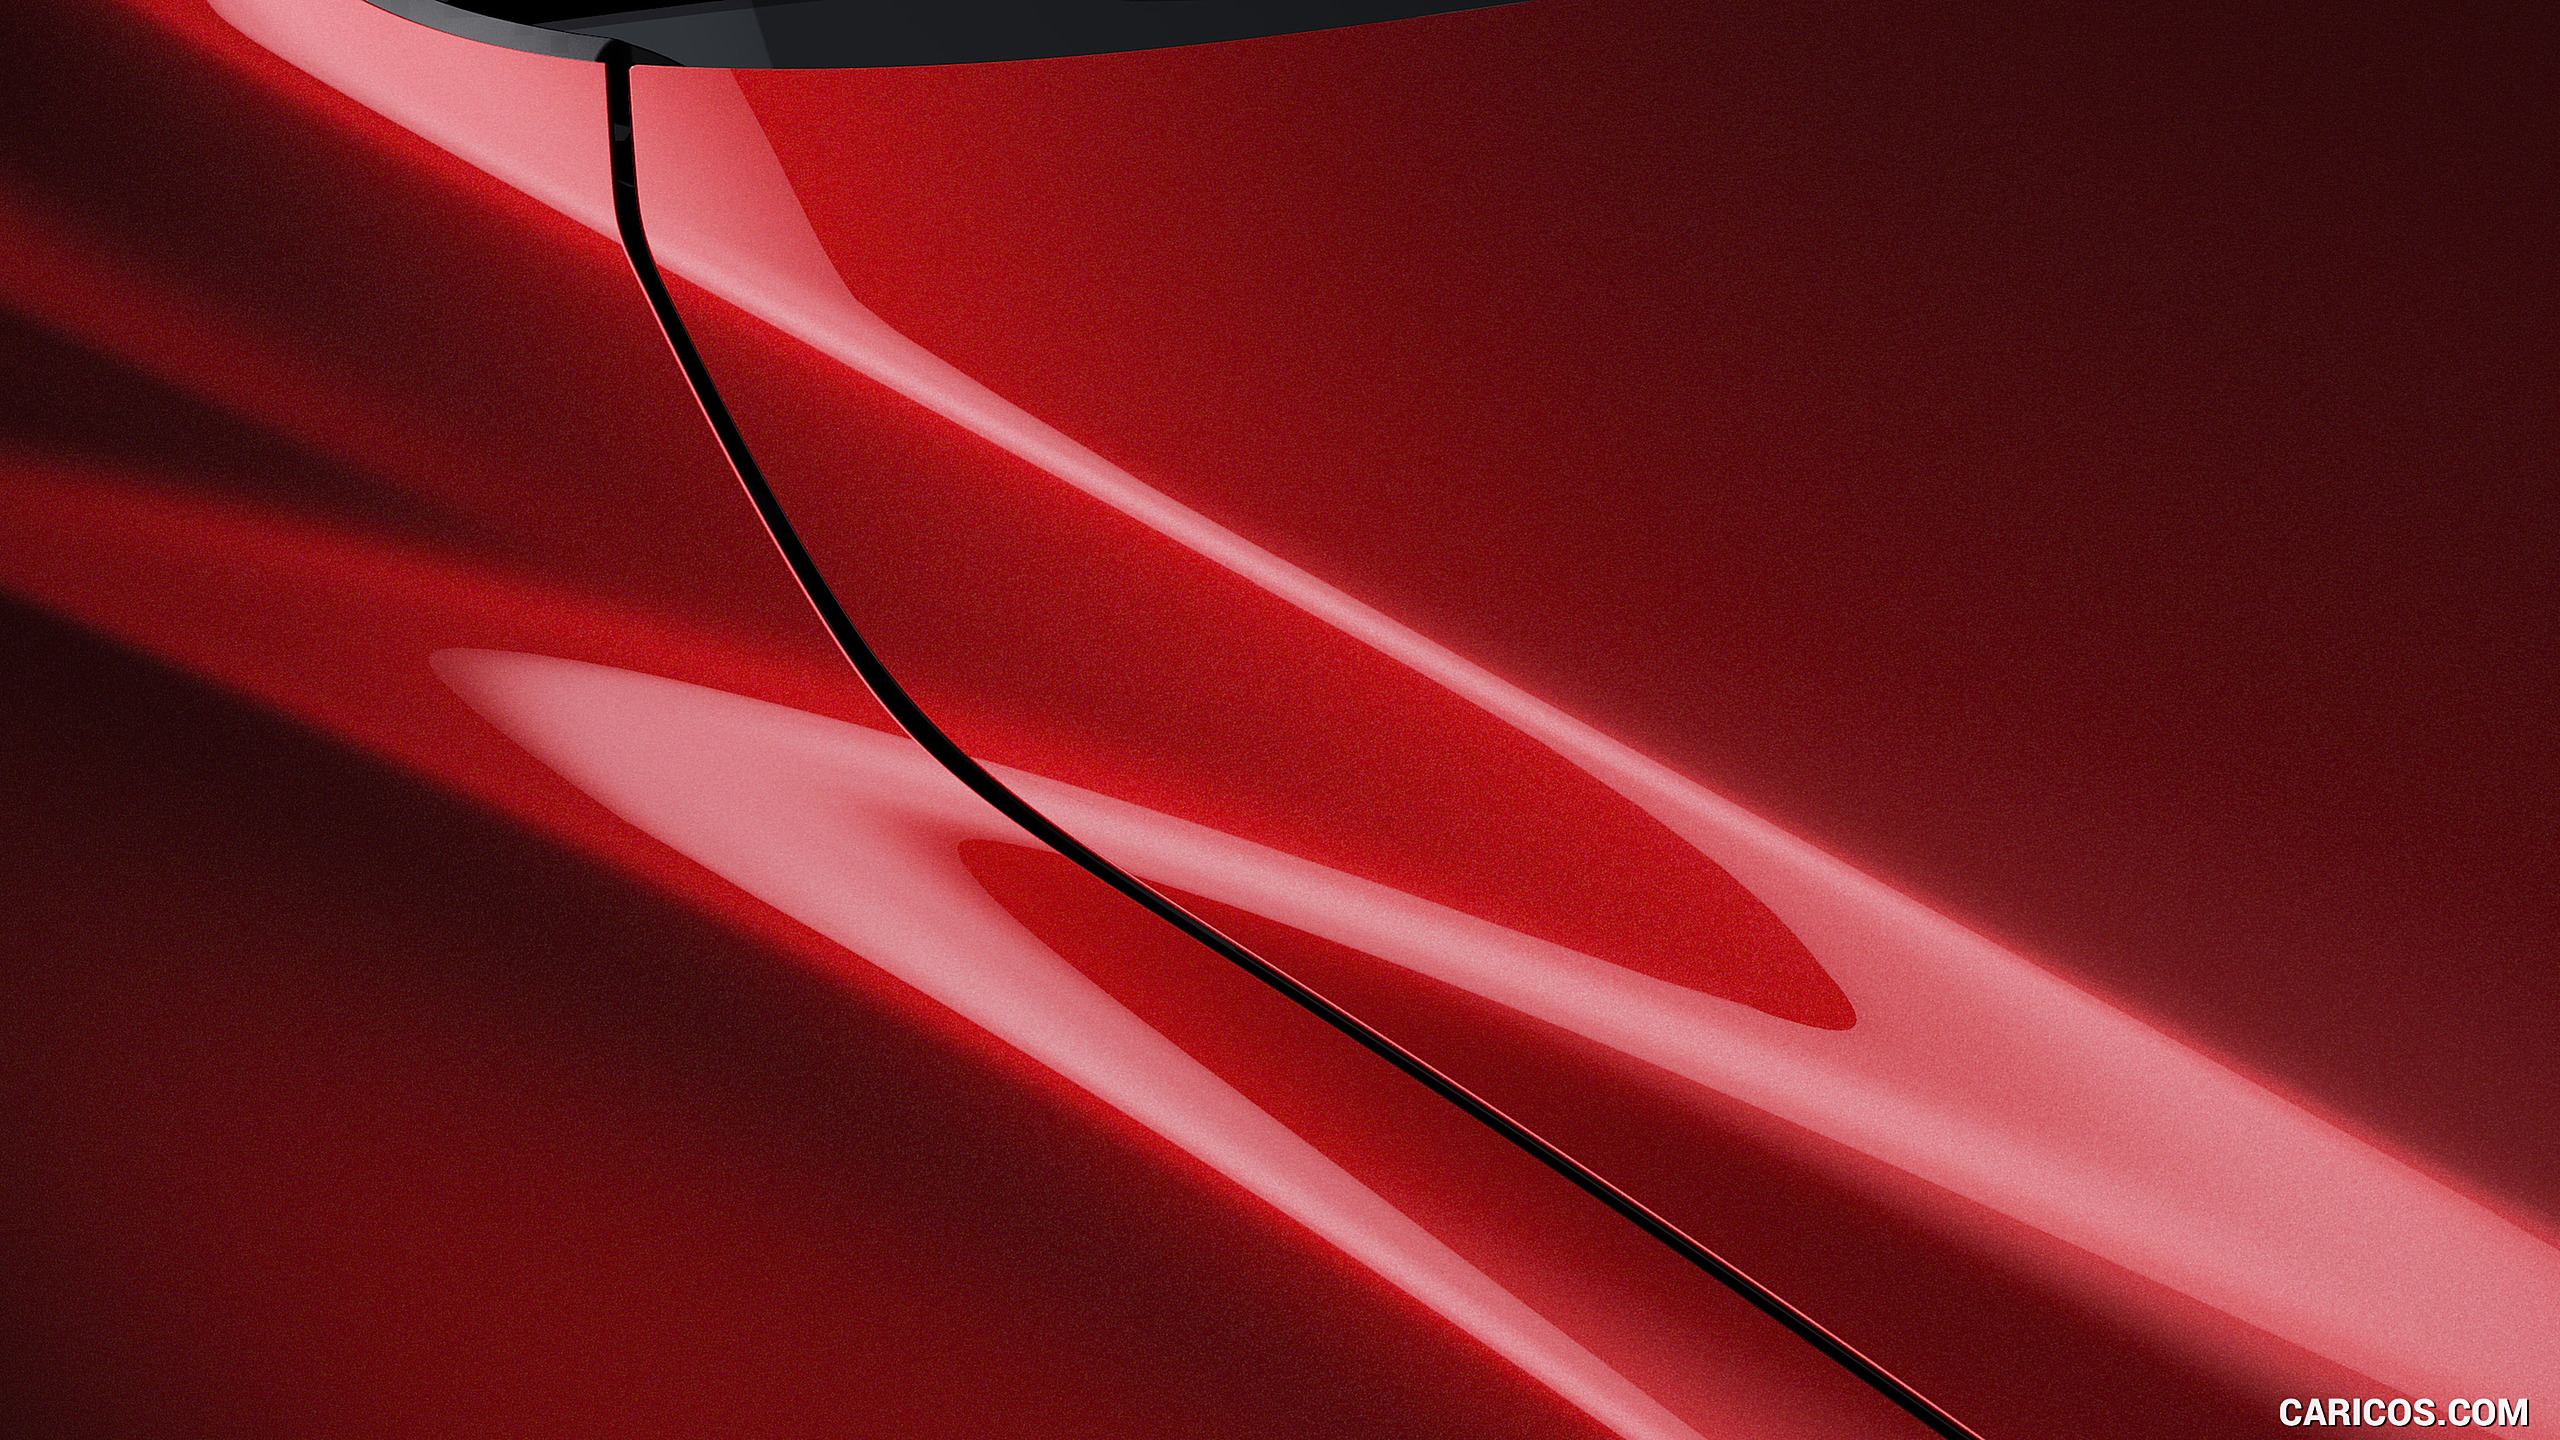 2017 Mazda 6 - Soul Red Color Option, #80 of 82